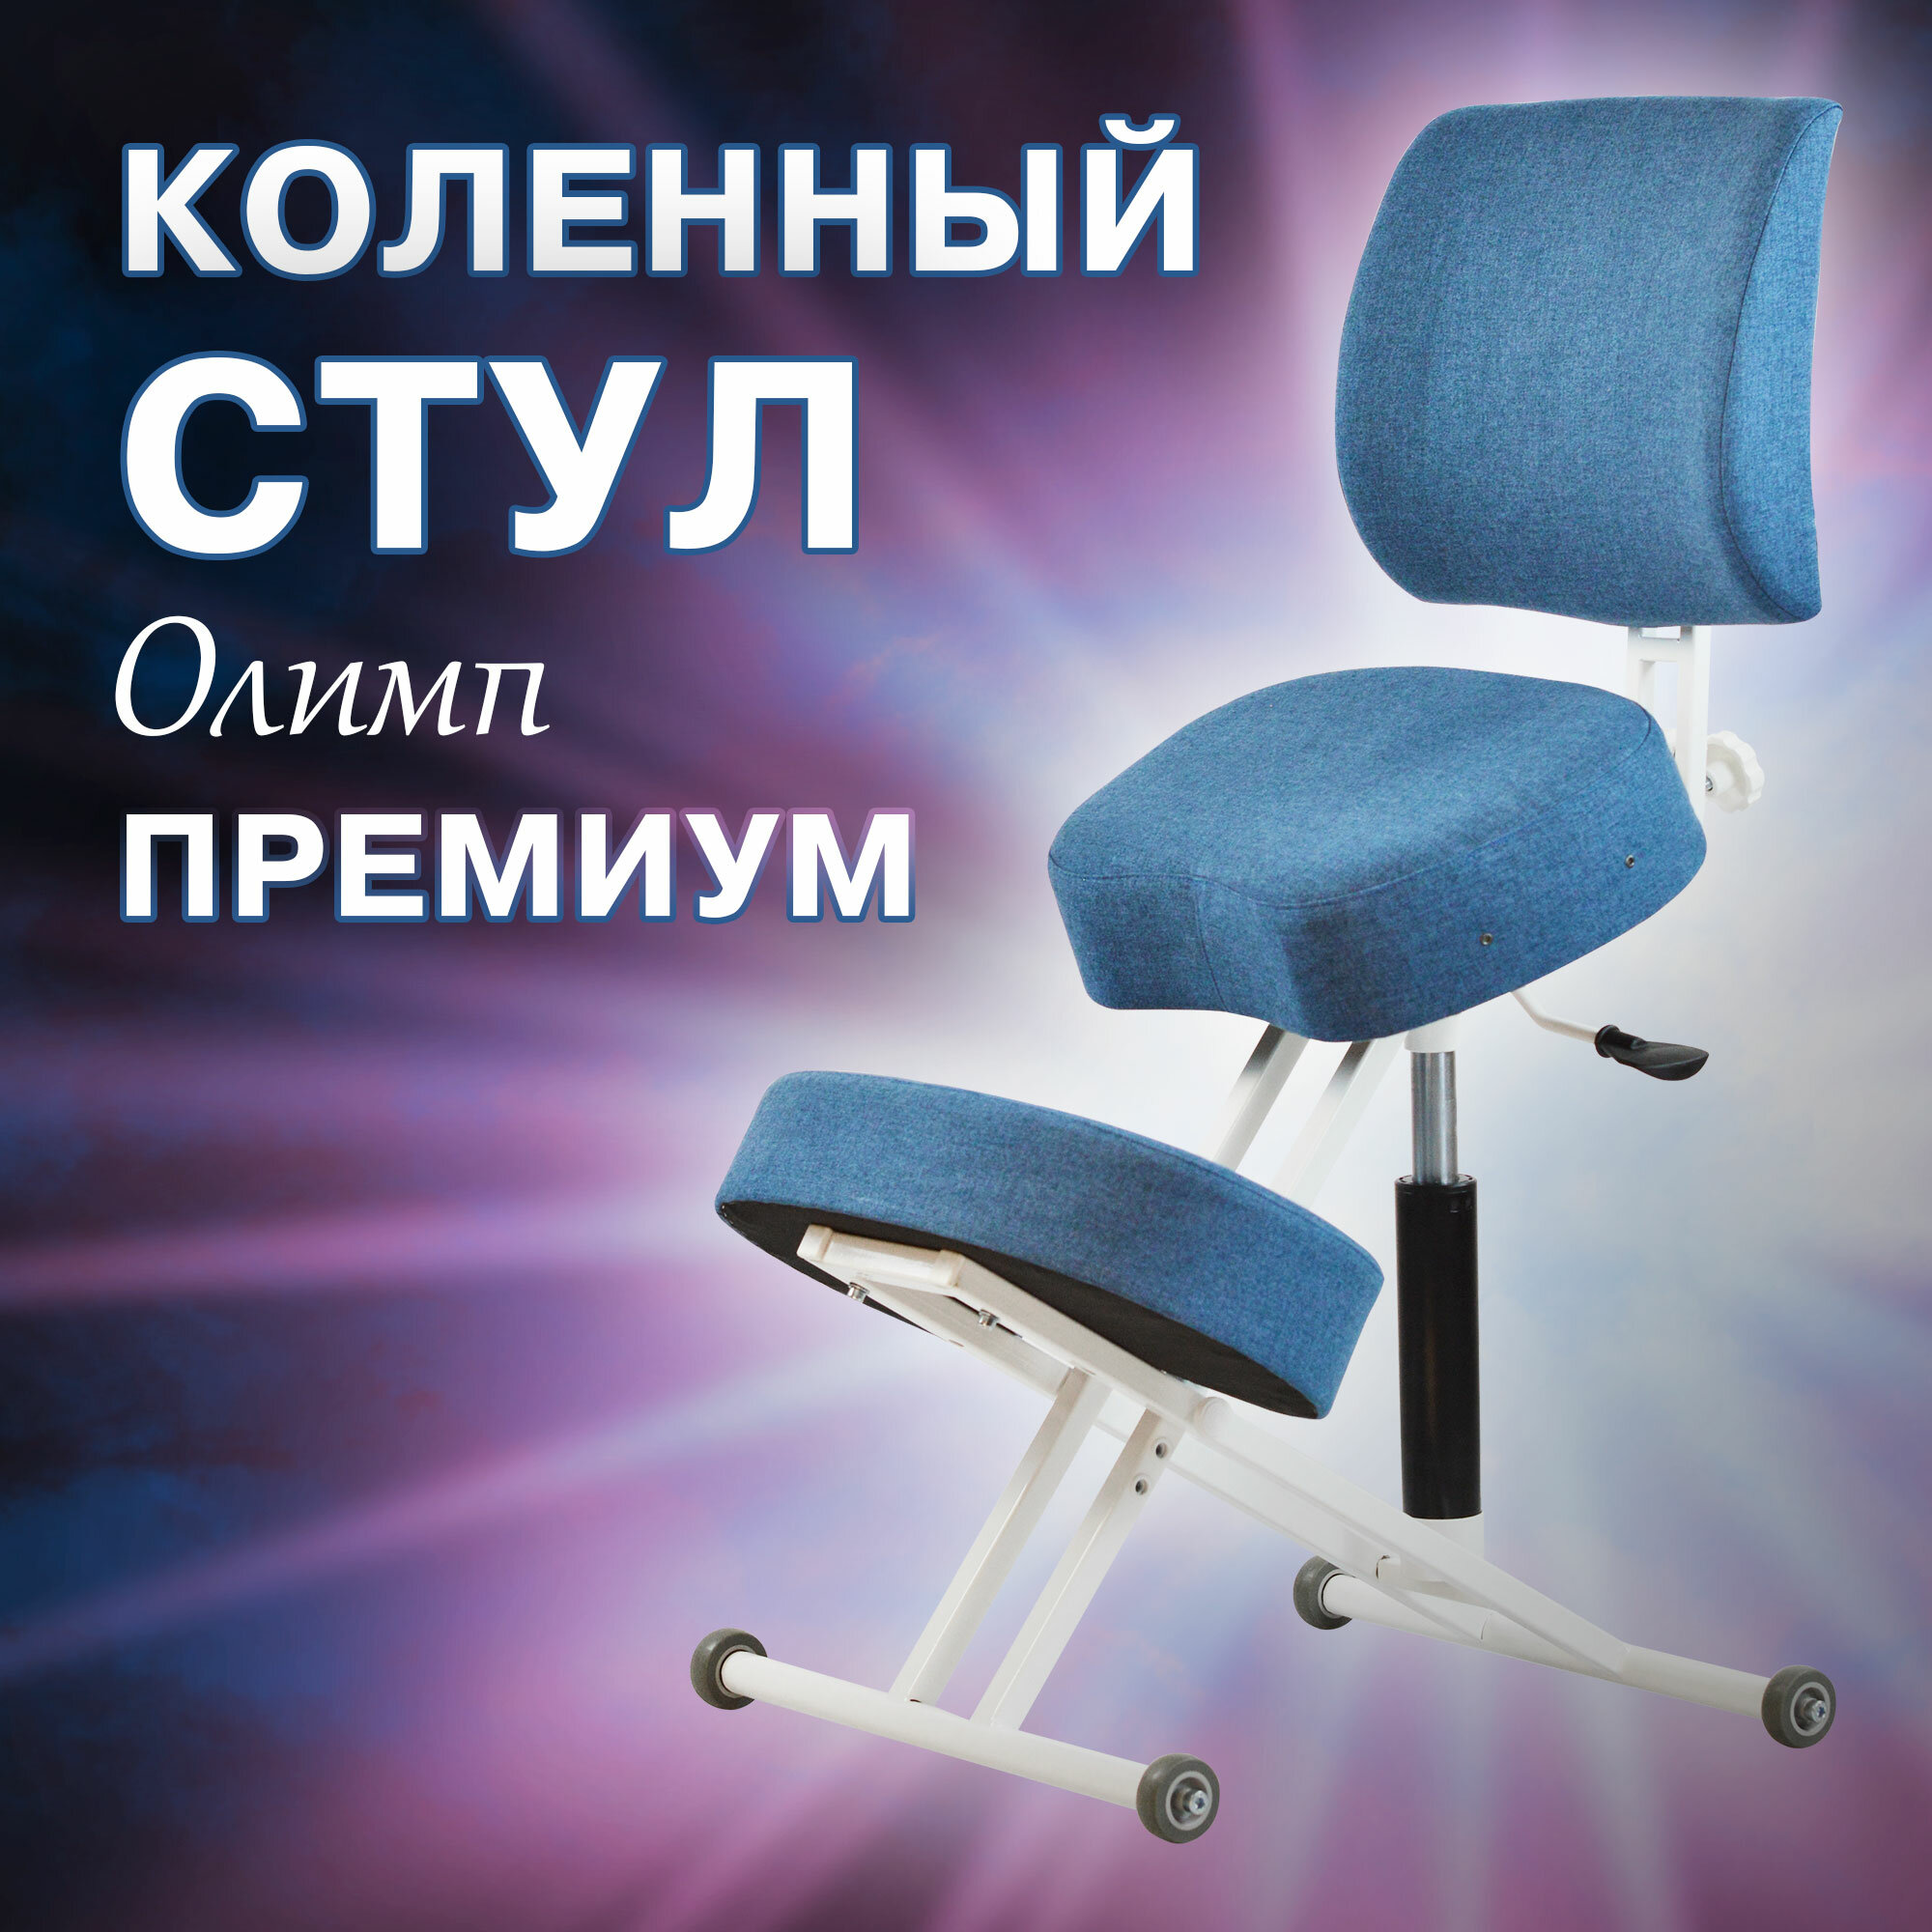 Ортопедический коленный стул для осанки Олимп, растущий стул для детей и взрослых синий